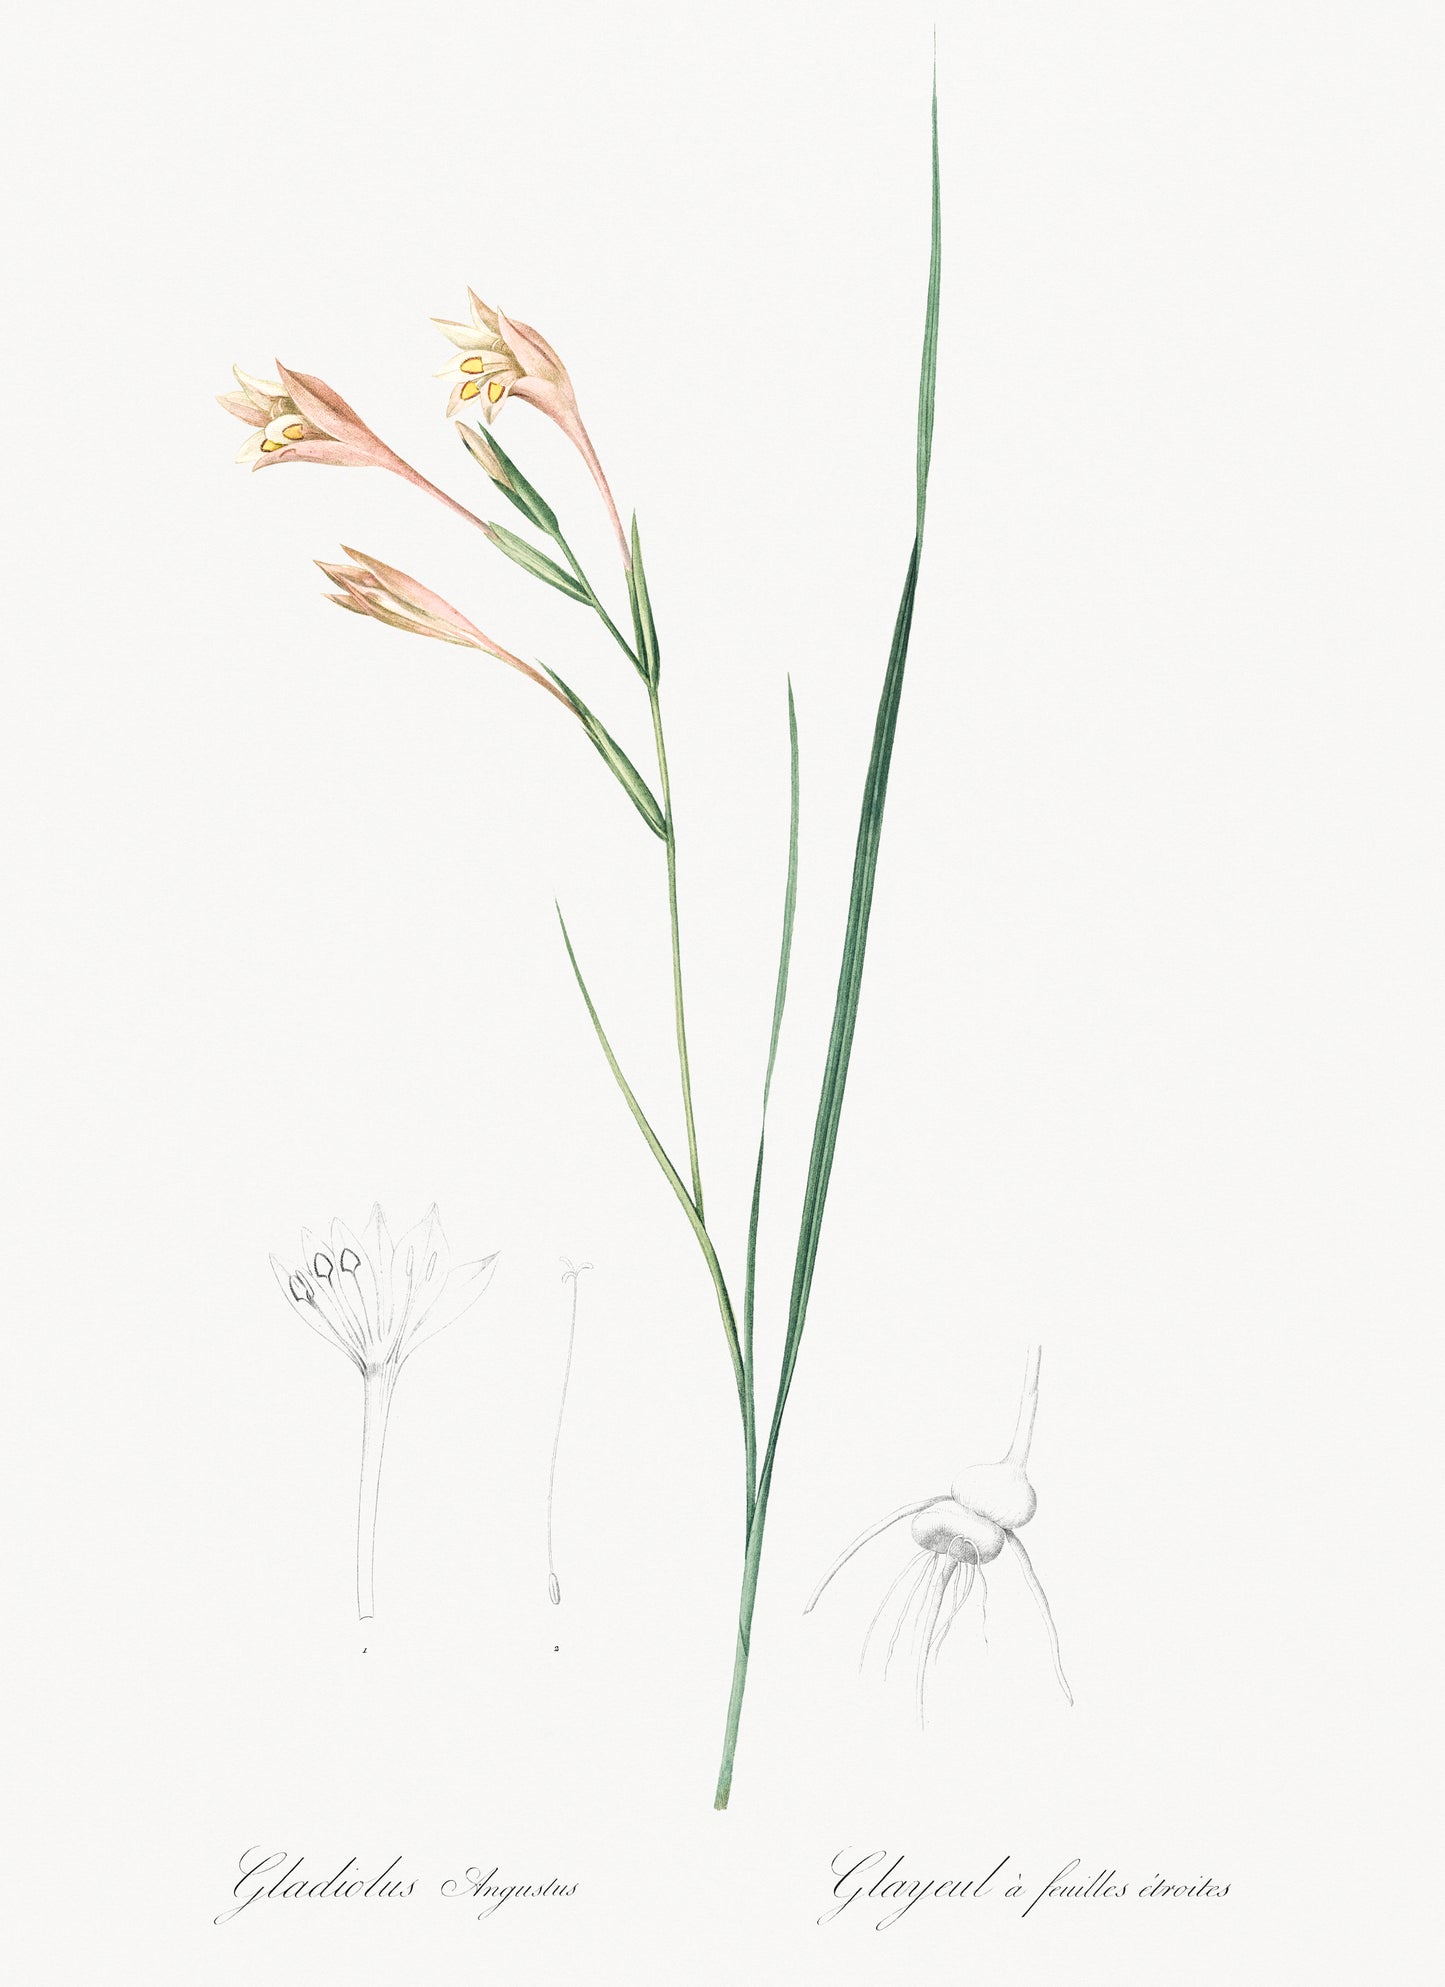 Gladiolus Angustus